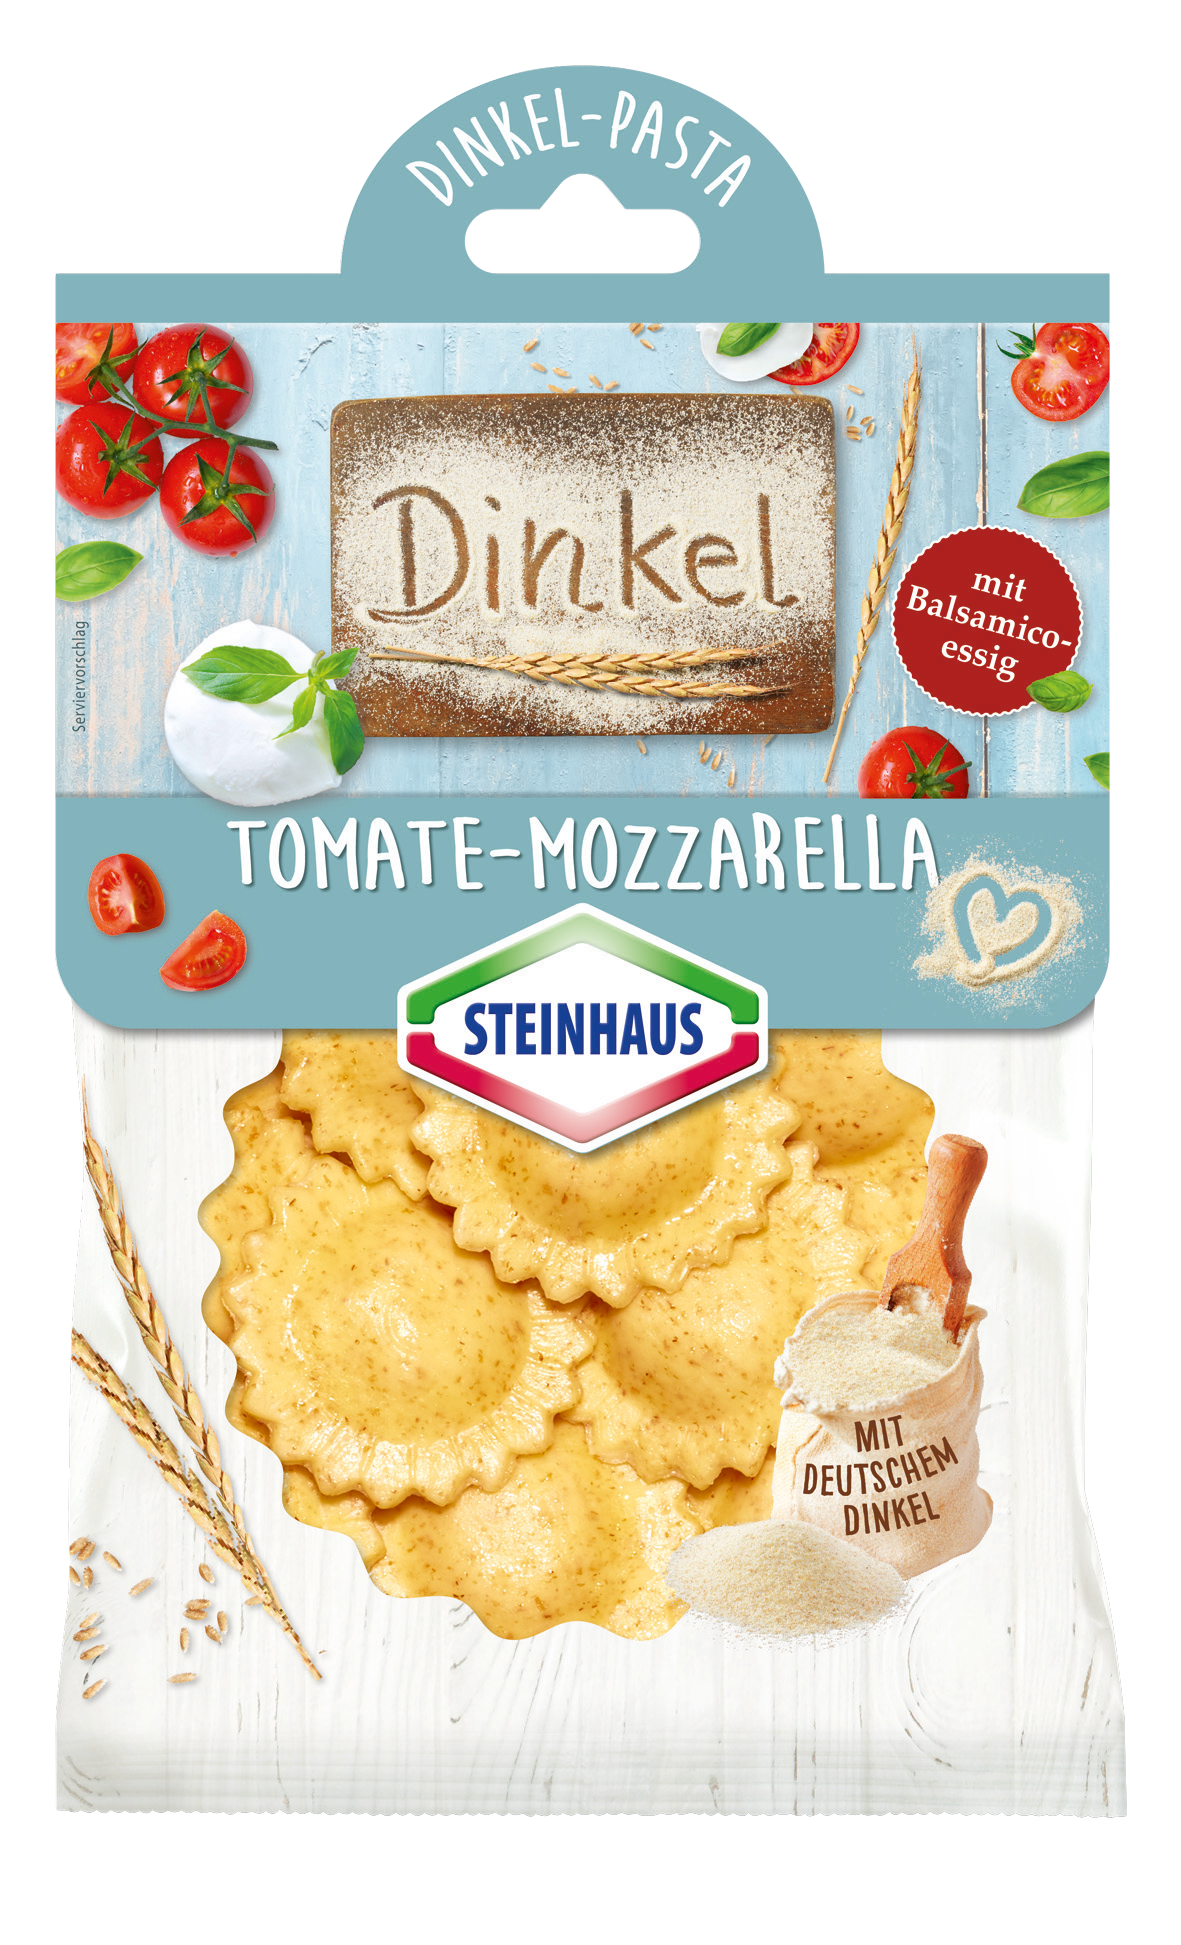 Dinkel-Pasta Tomate Mozzarella – Frische Pasta mit 100 % Dinkel aus Deutschland. Überzeugt mit einer schmackhaften Tomaten-Mozzarella Füllung. Als Genusshighlight mit Balsamicoessig verfeinert – das ist Pasta Freude pur.